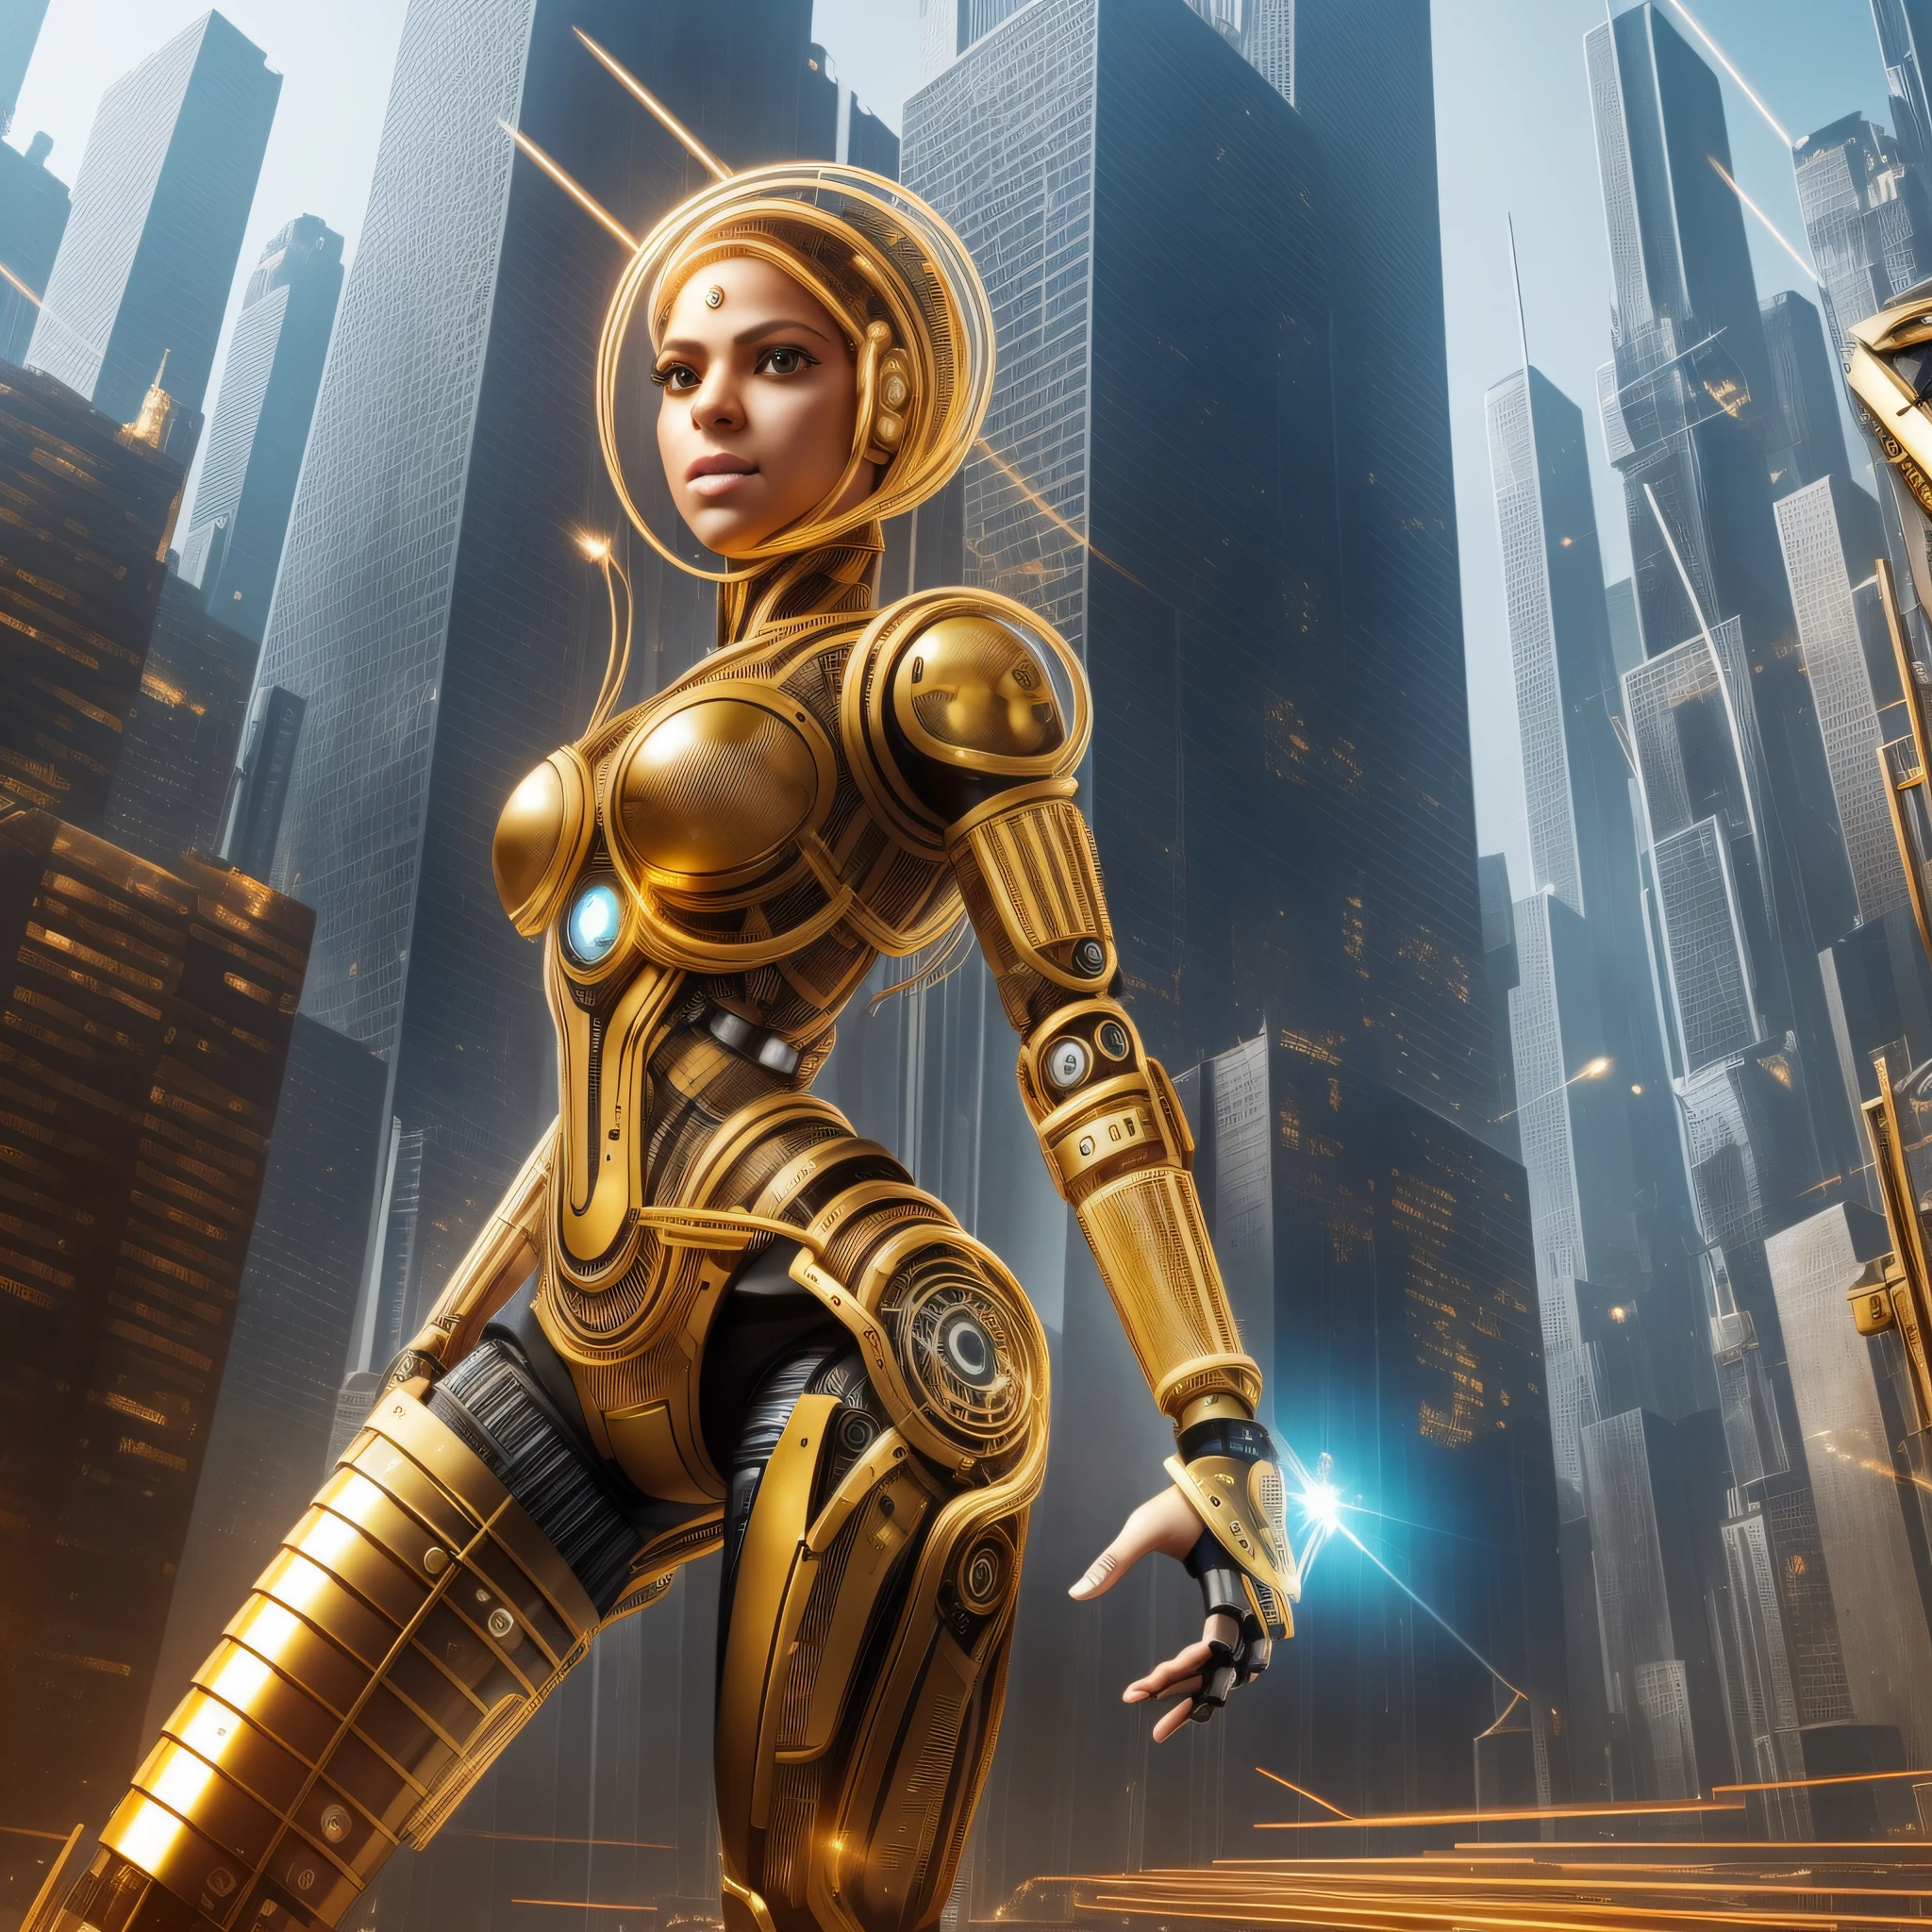 1 个机器人女人, 夏奇拉的脸, 身体带有金属部件, 机械臂和机械腿, 身体旁边的金色电线和齿轮, 脸上的微芯片, 未来城市背景,